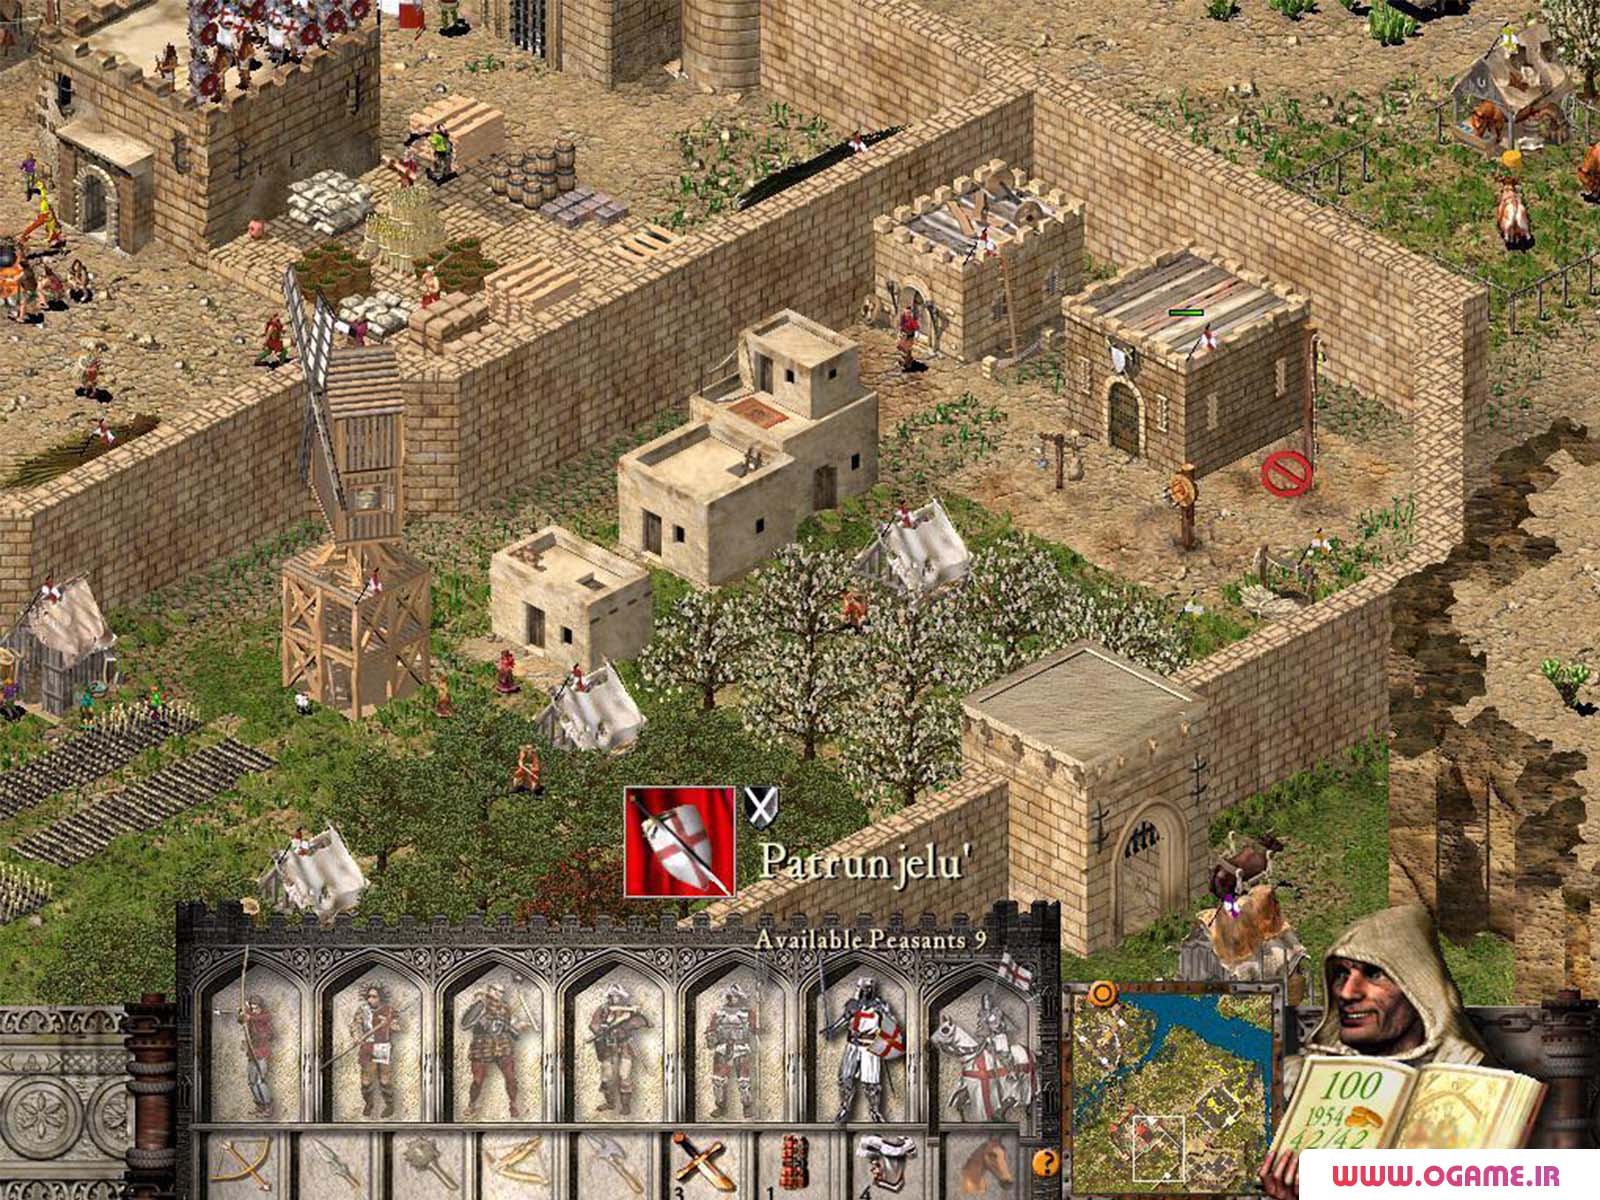  دانلود بازی Stronghold: Crusader نسخه کامل برای کامپیوتر